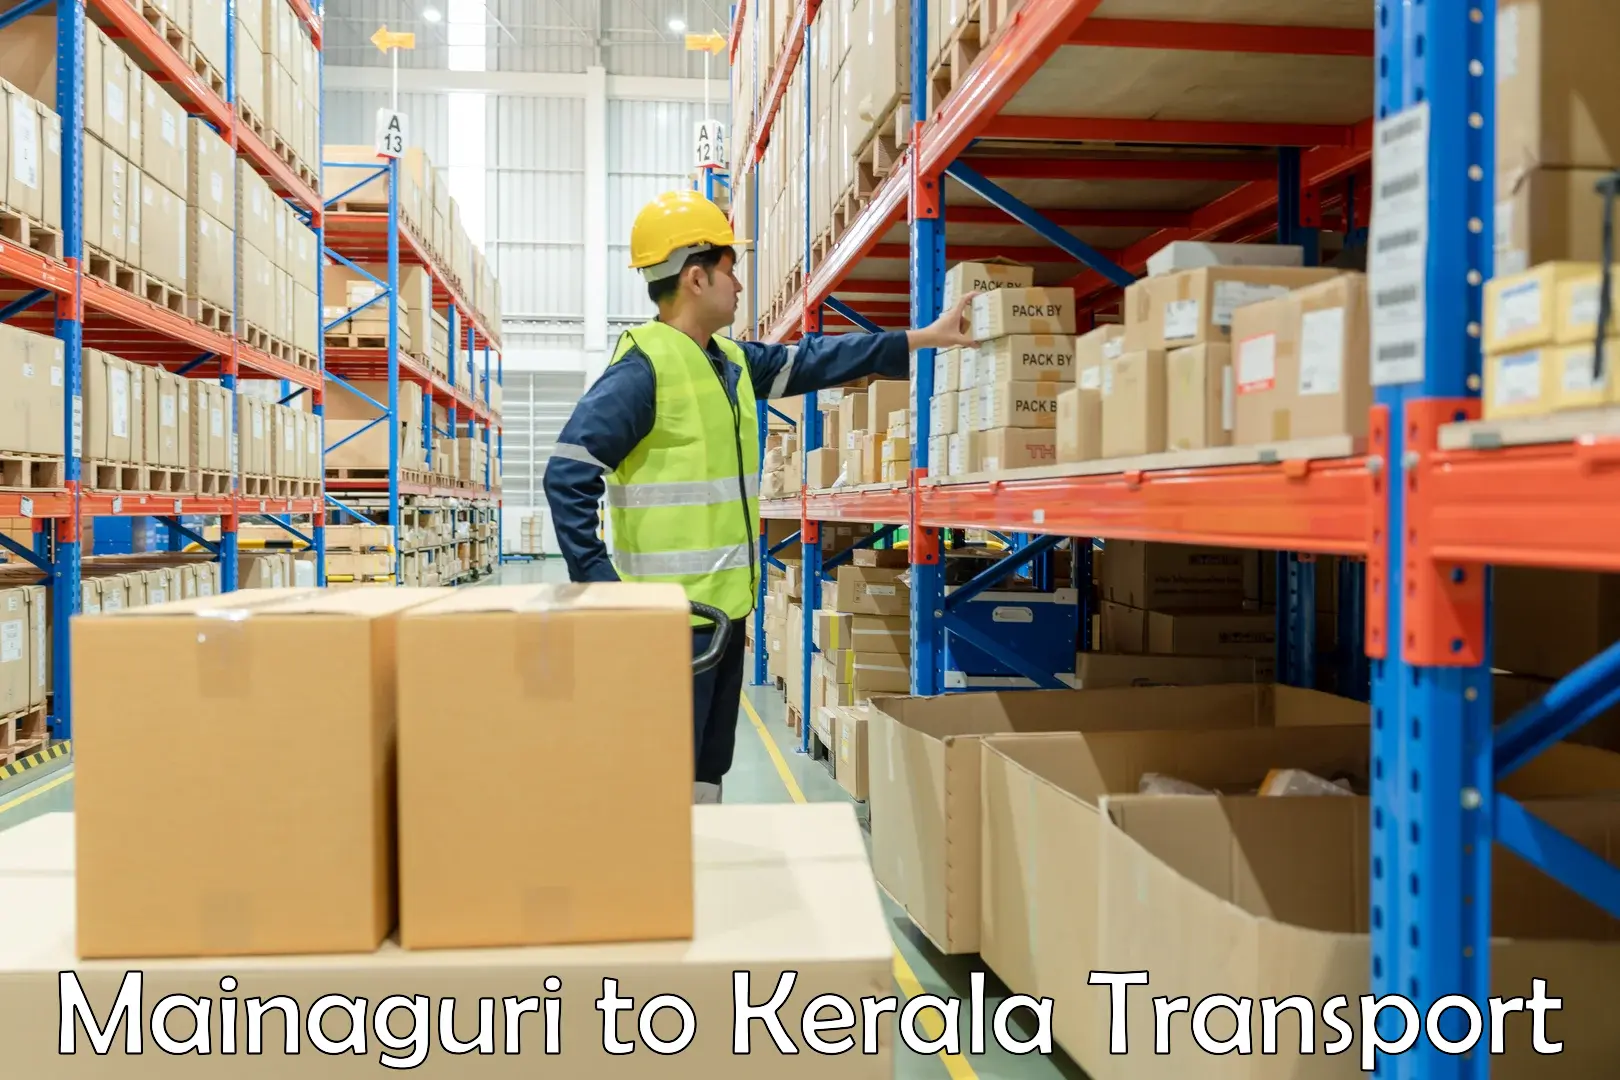 Air freight transport services Mainaguri to Kerala